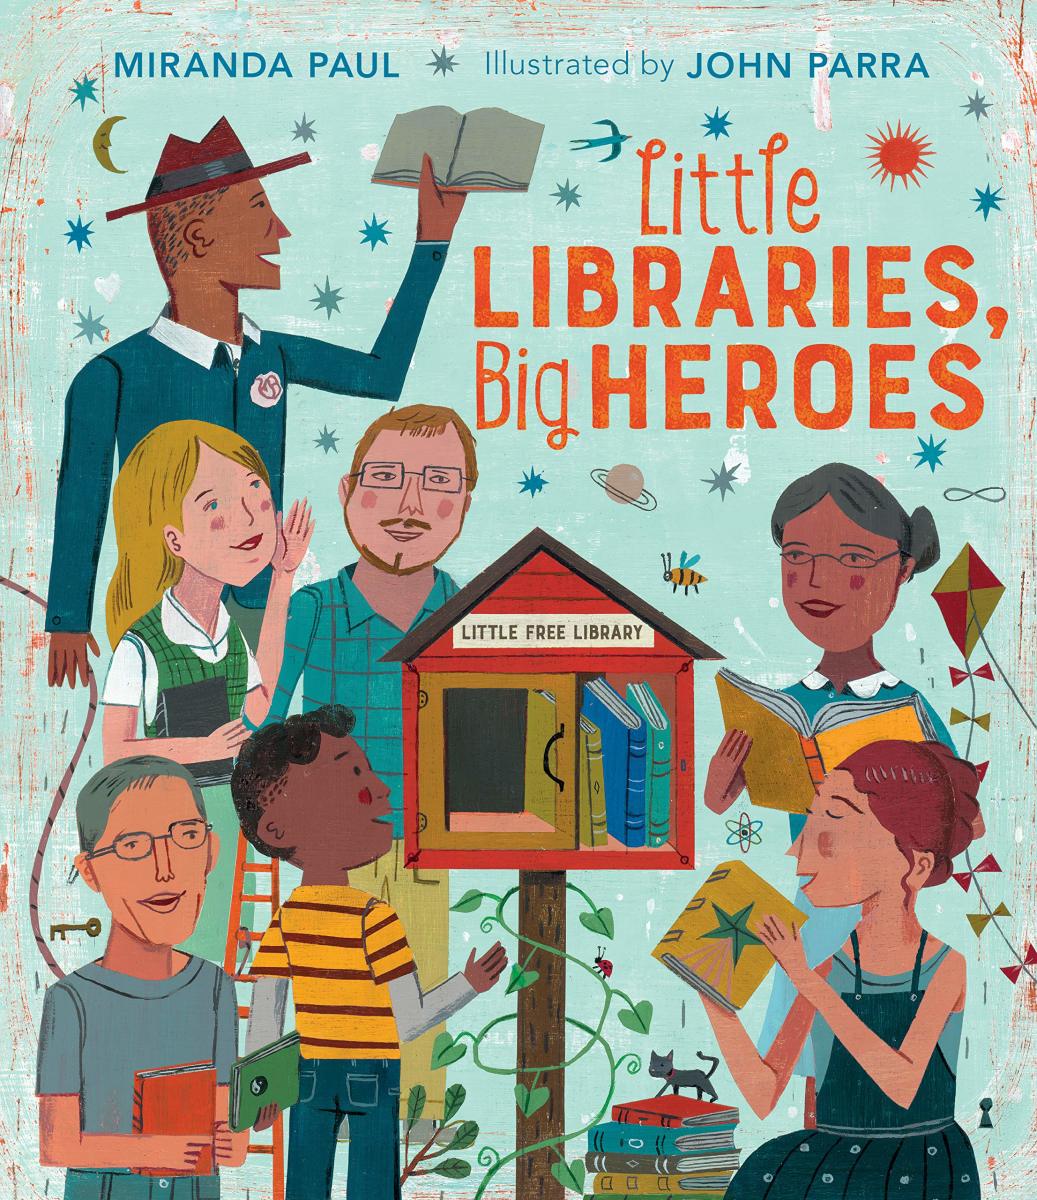 Little Libraries, Big Heroes by Miranda Paul